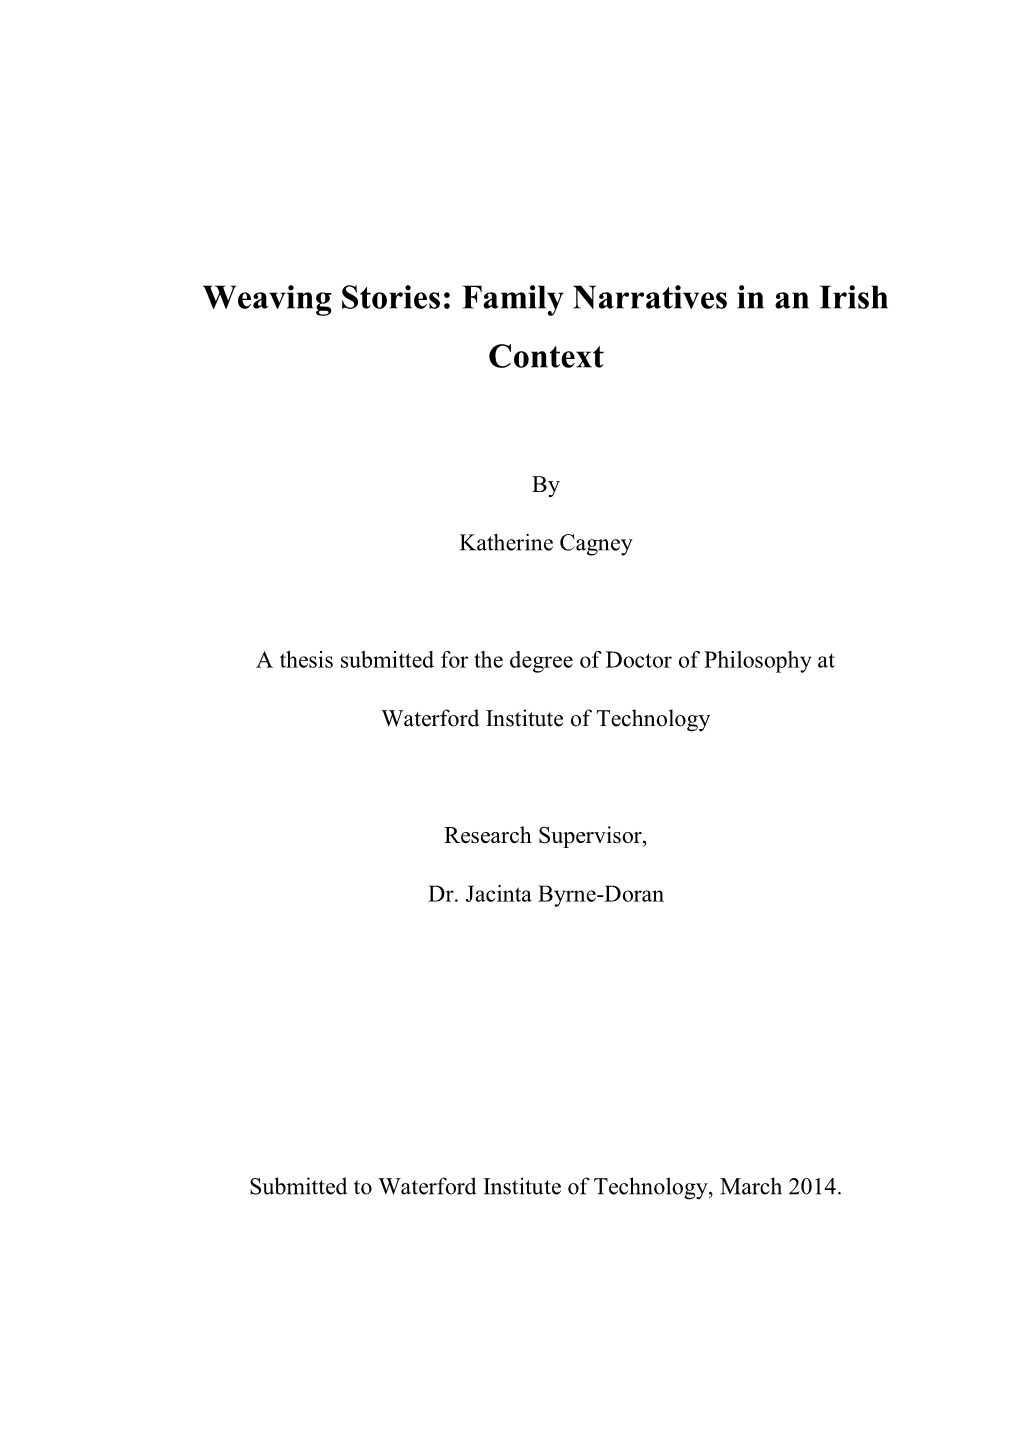 Family Narratives in an Irish Context